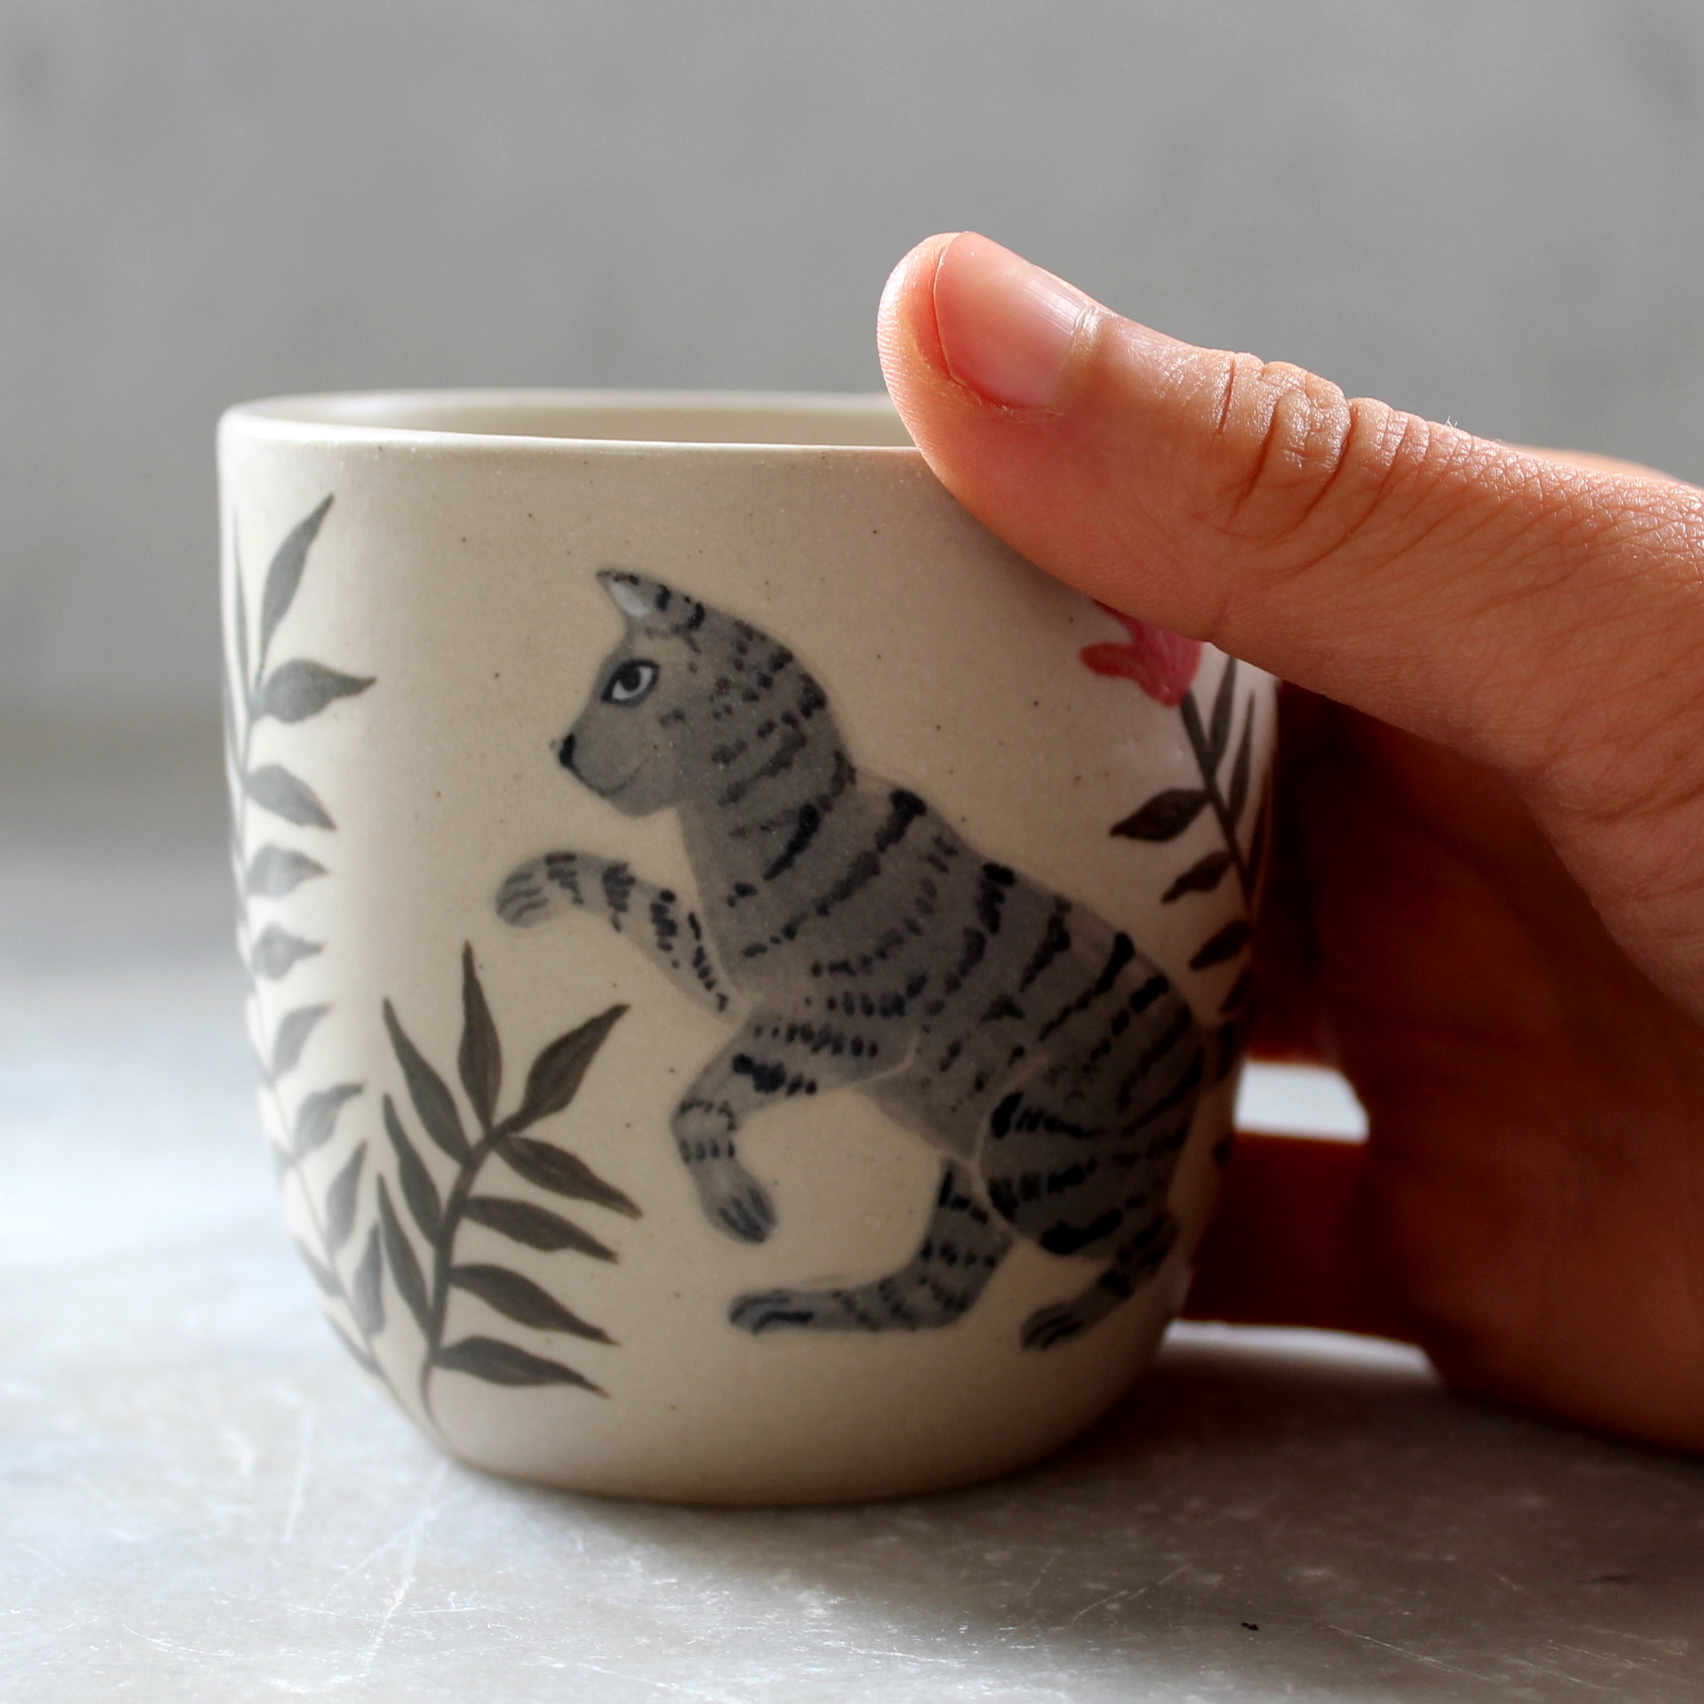 Tasse chat gris tigré. Céramique artisanale fabriquée et illustrée par Anaïs Trivier